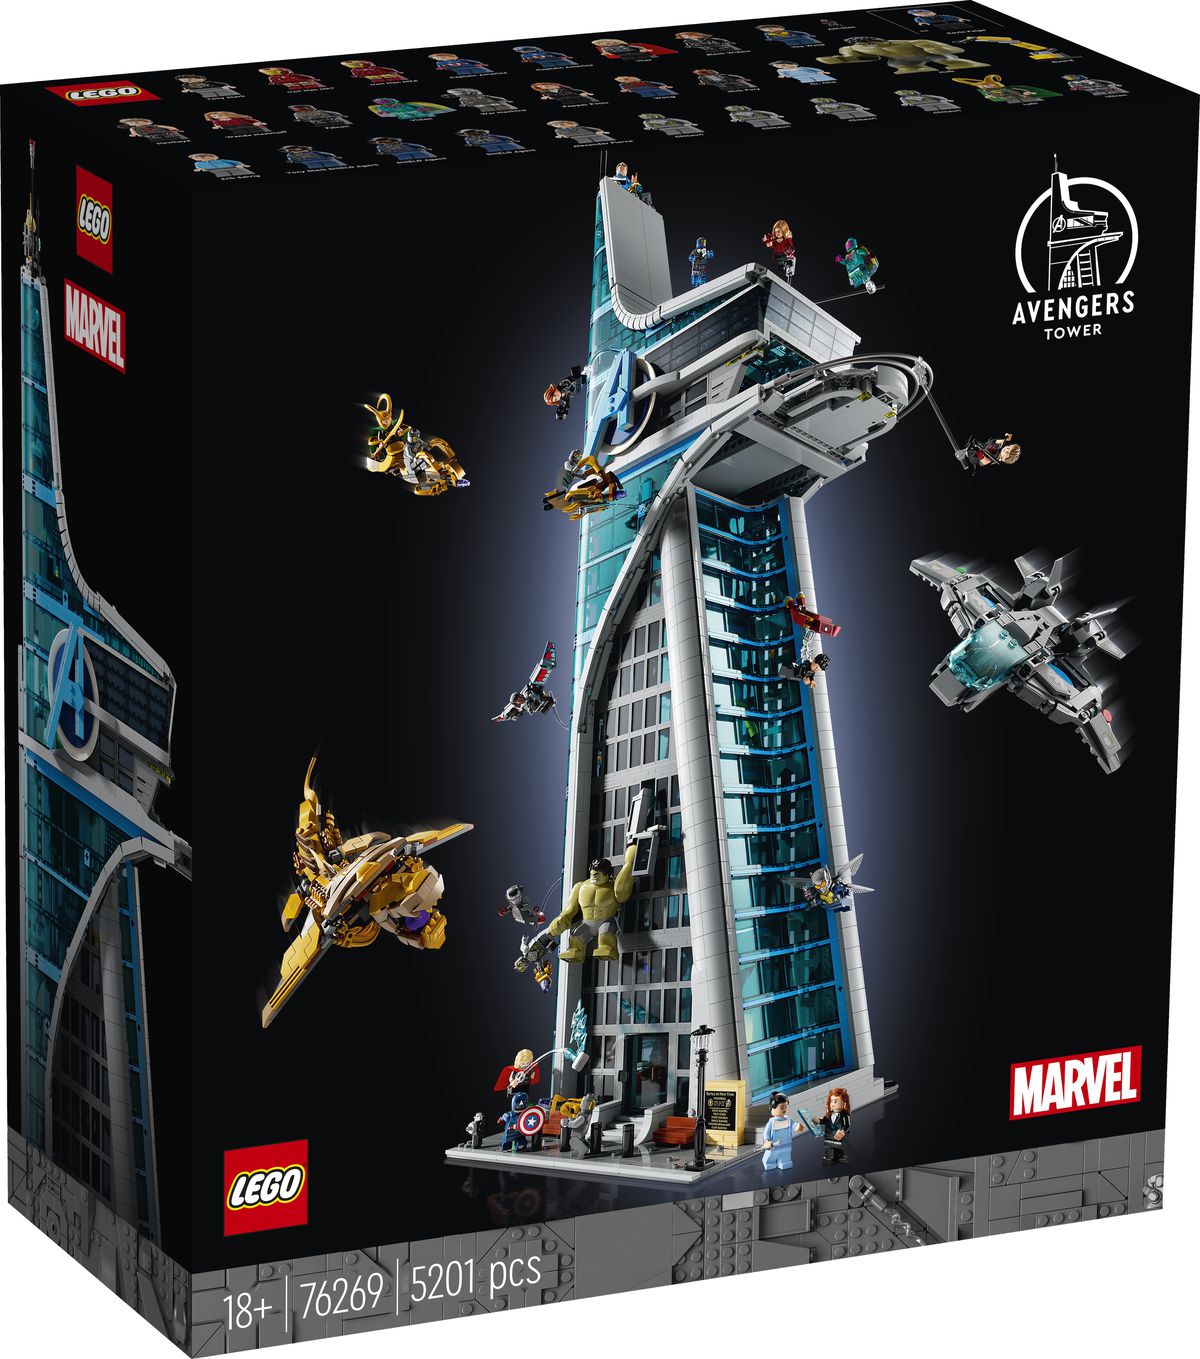 Une photo de la tour Lego Avengers, montrant diverses forces Avengers et Chitauri se battant à l'extérieur.